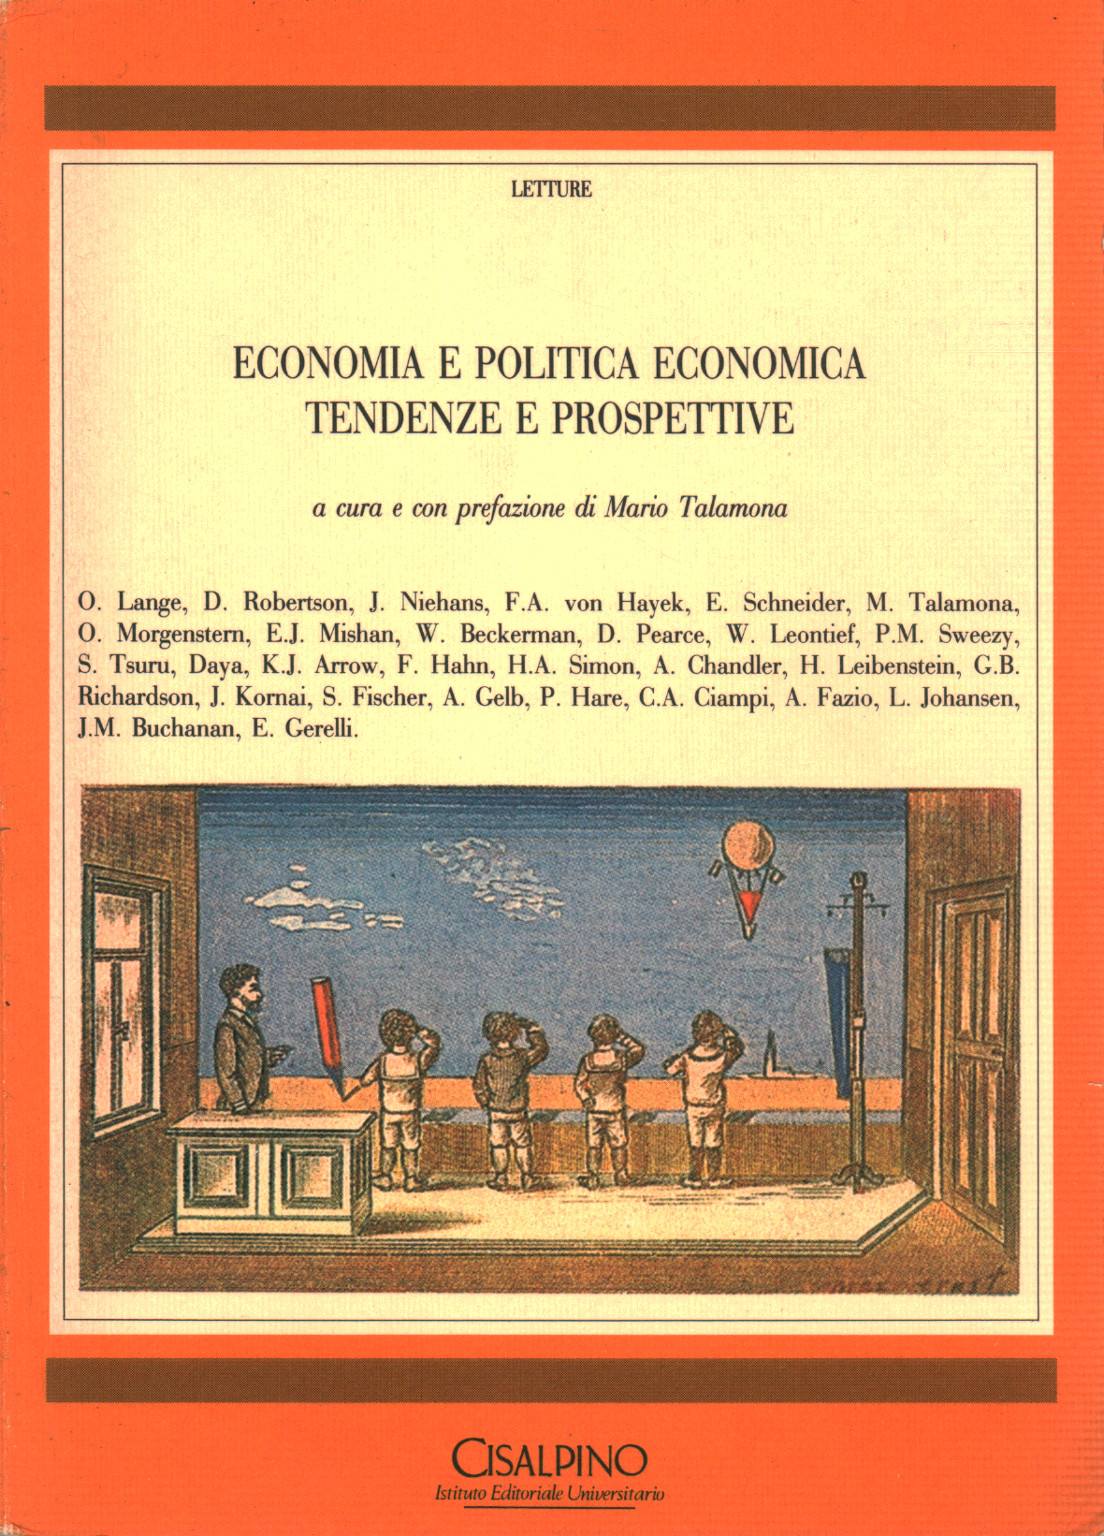 Economia e politica economica tendenze e prospetti, s.a.